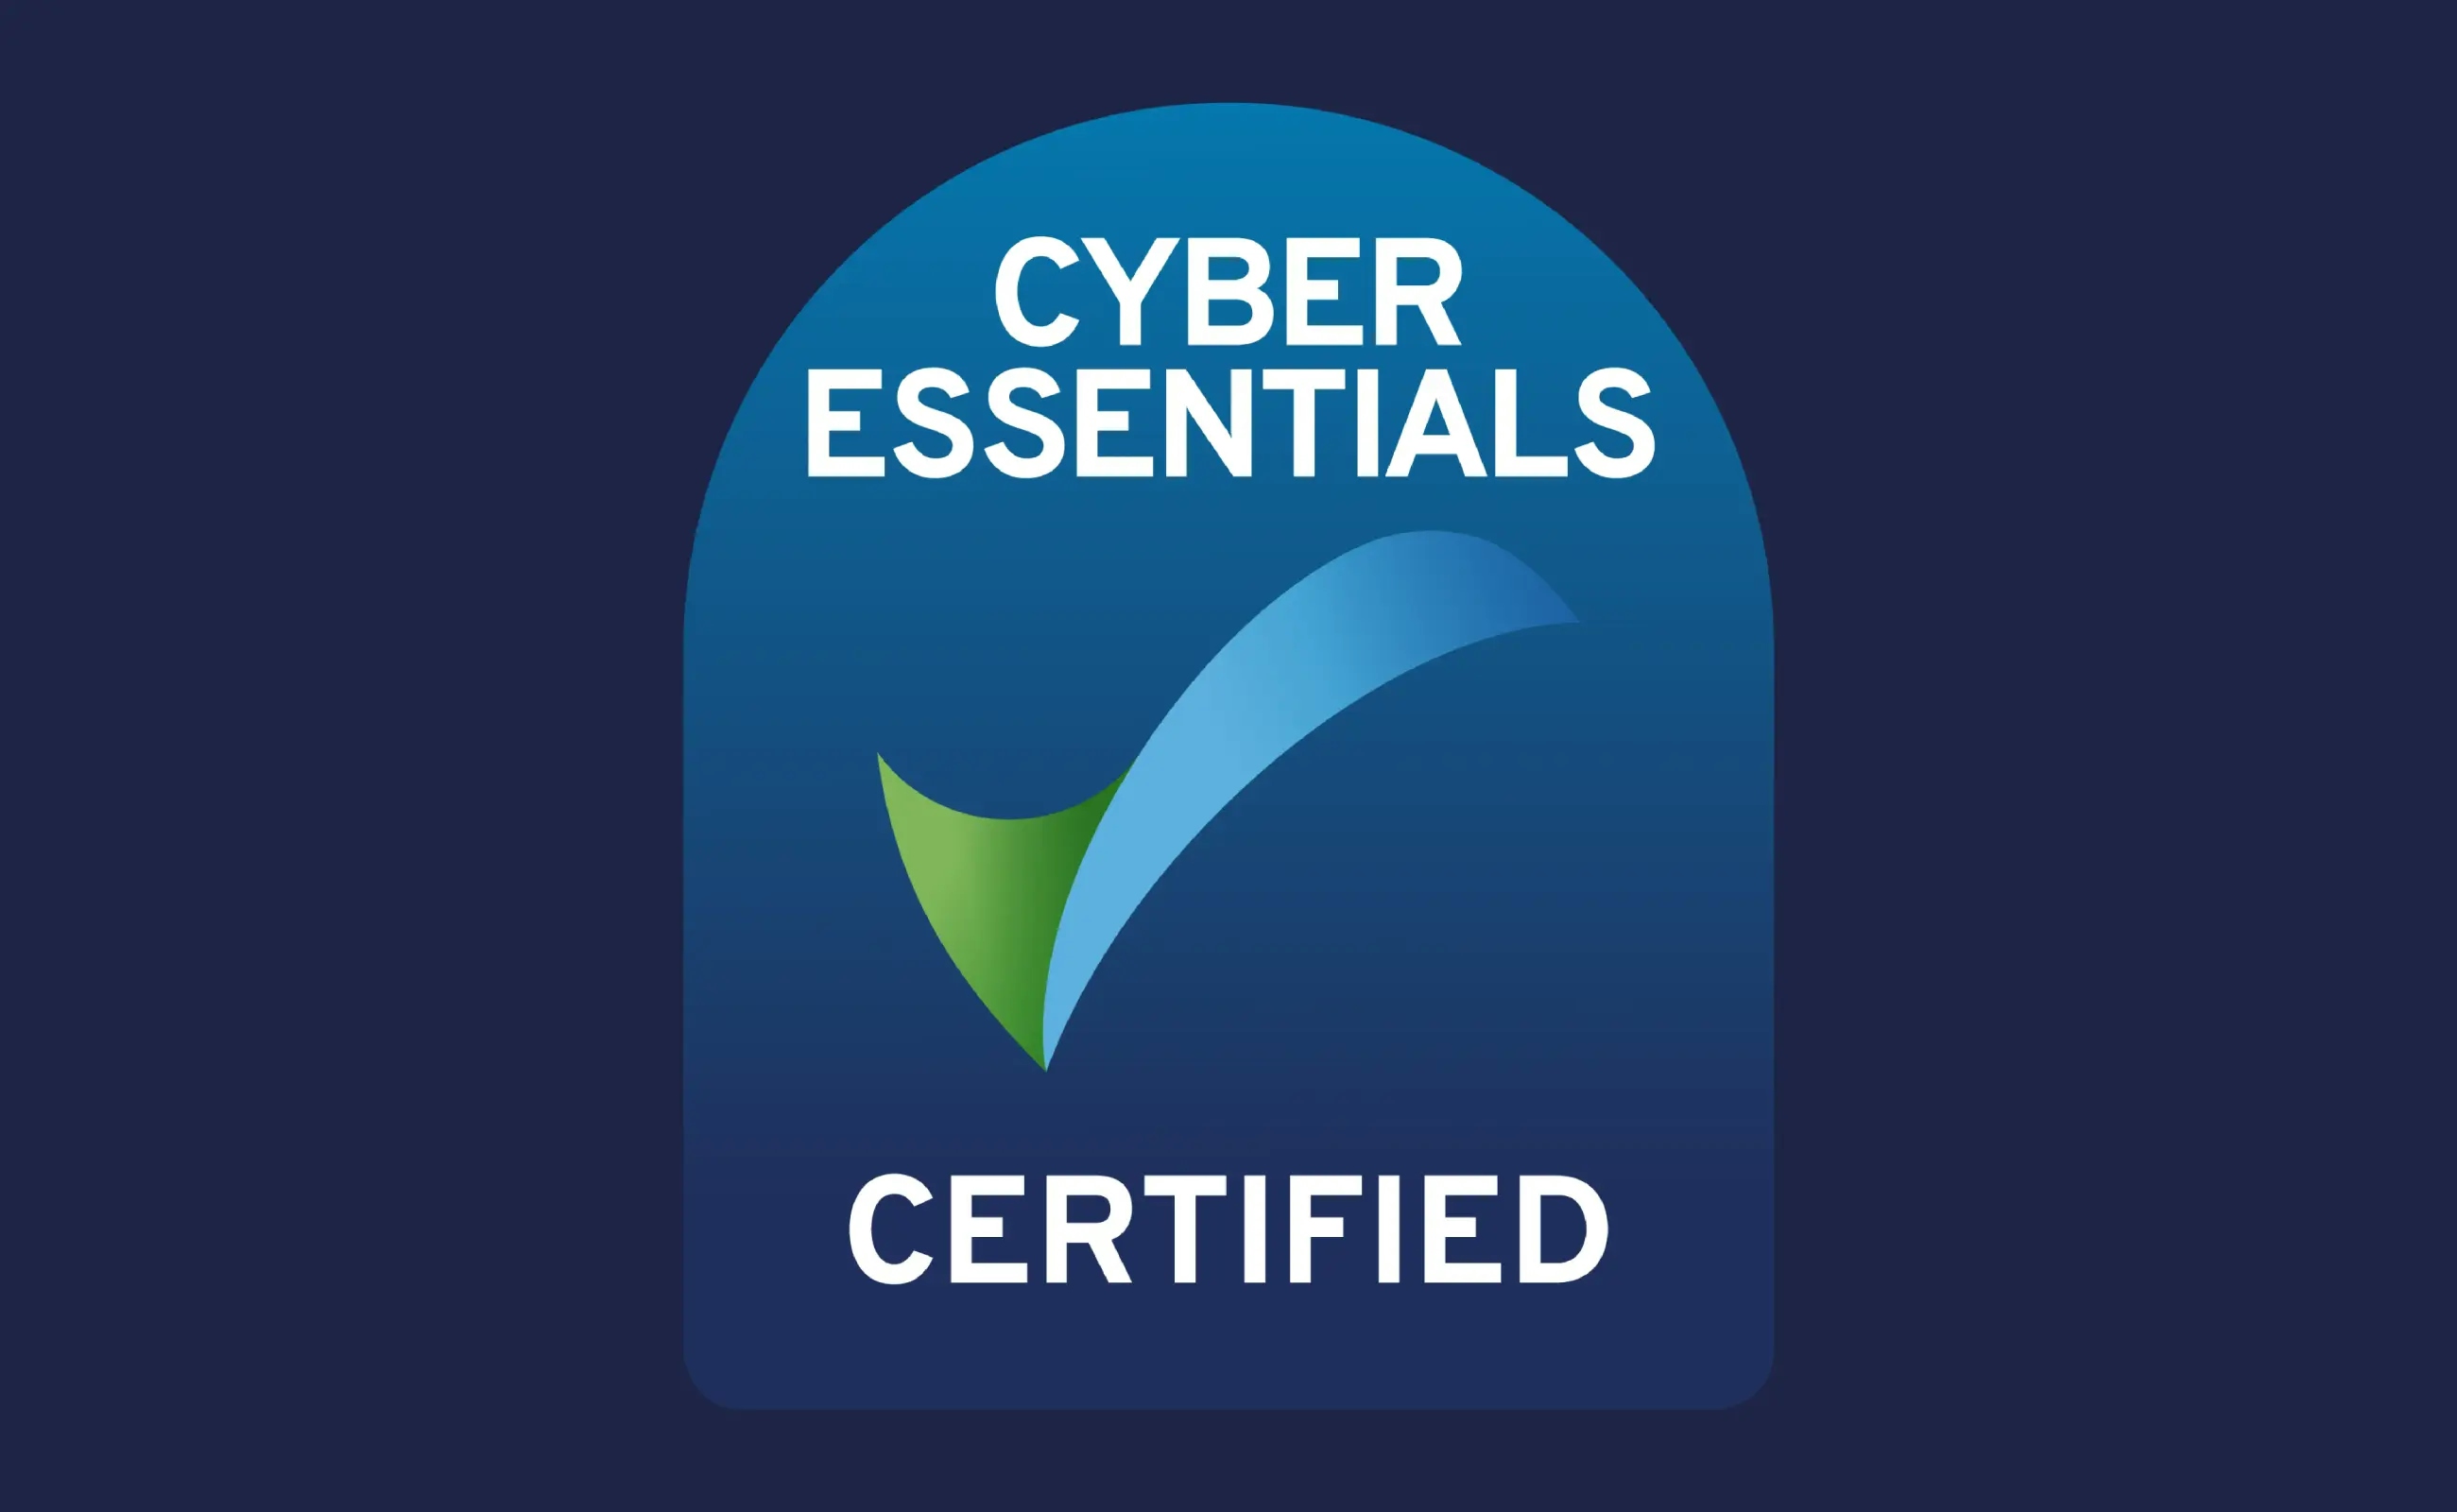 Cyber Essentials certificate logo